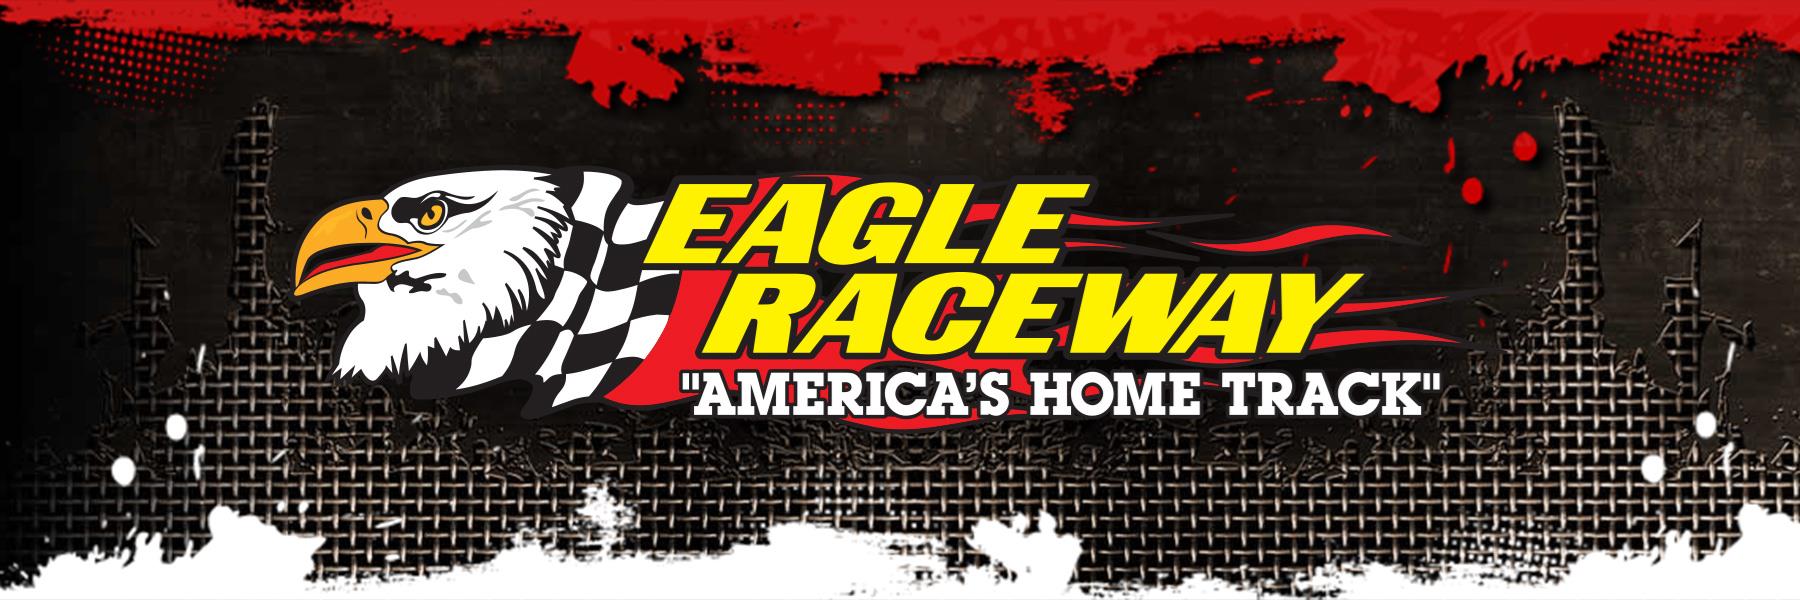 8/23/2015 - Eagle Raceway